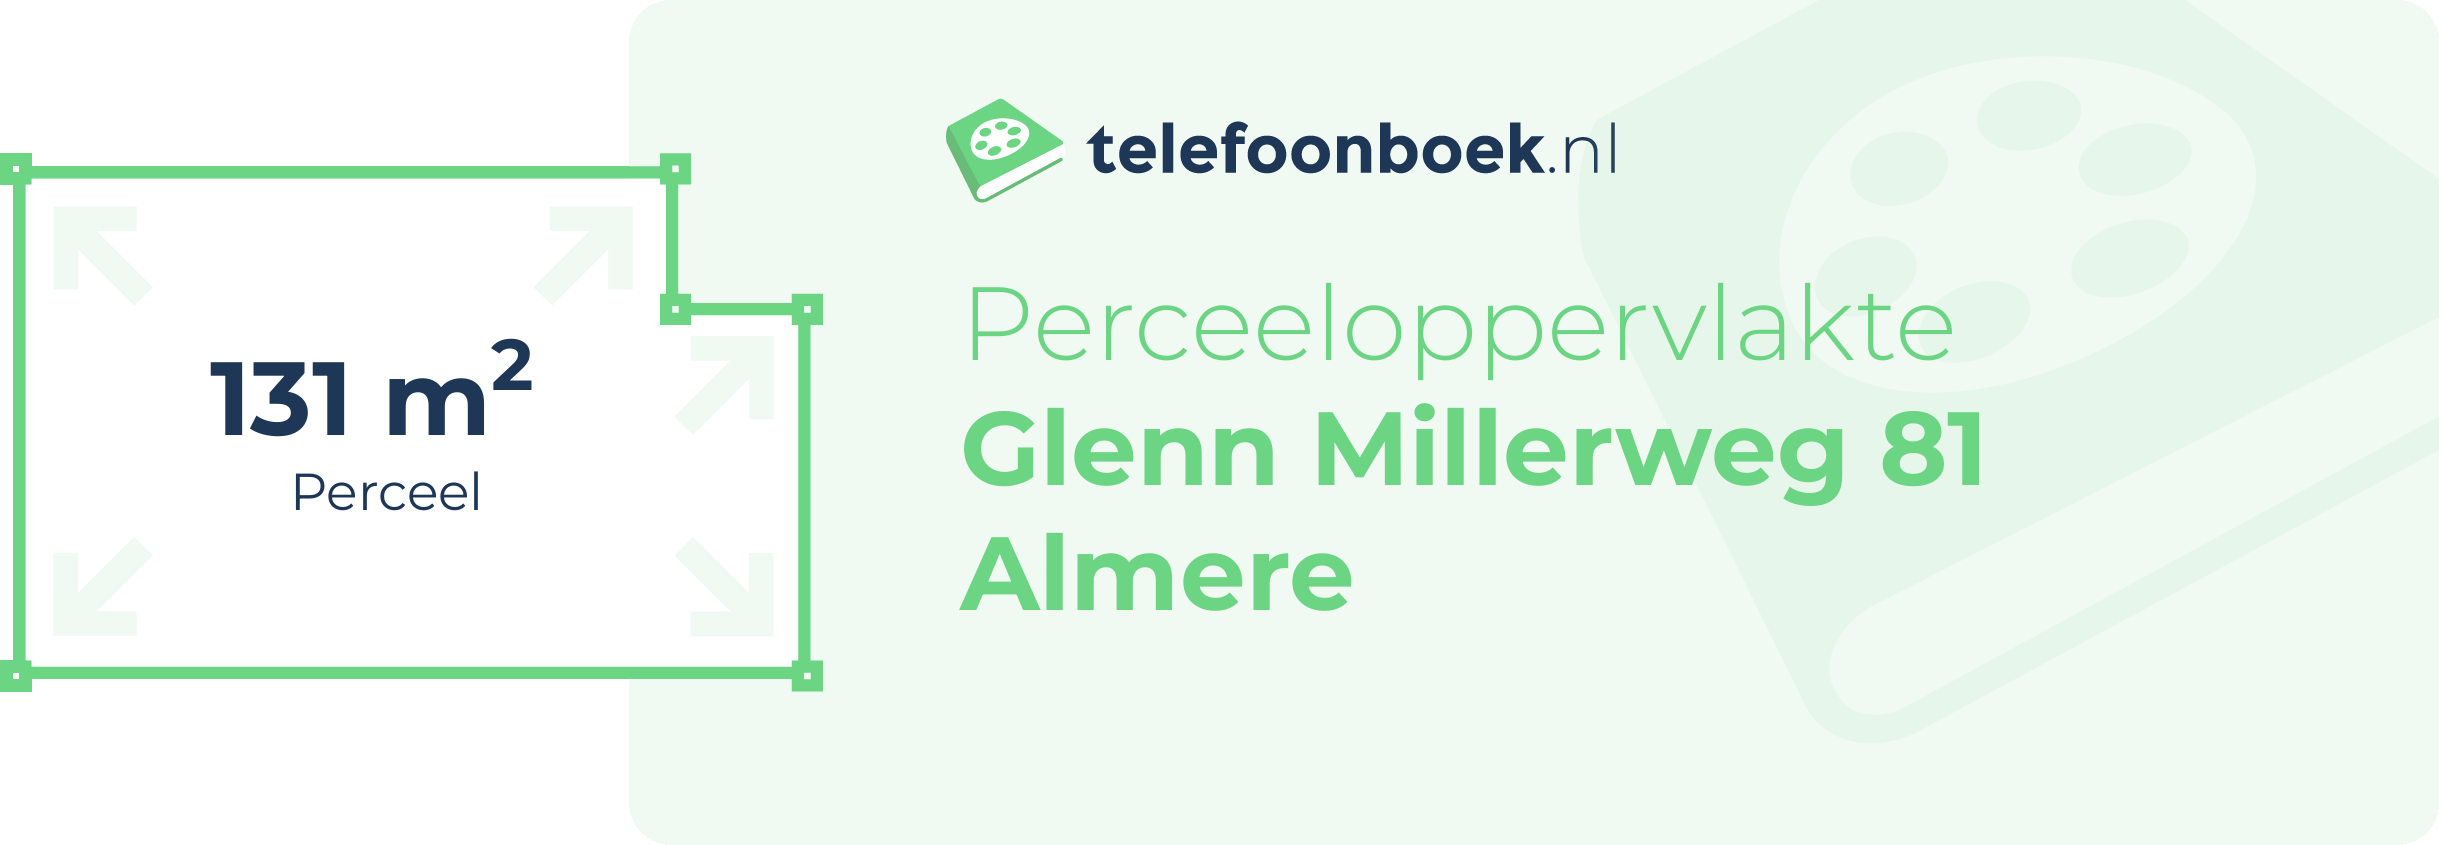 Perceeloppervlakte Glenn Millerweg 81 Almere